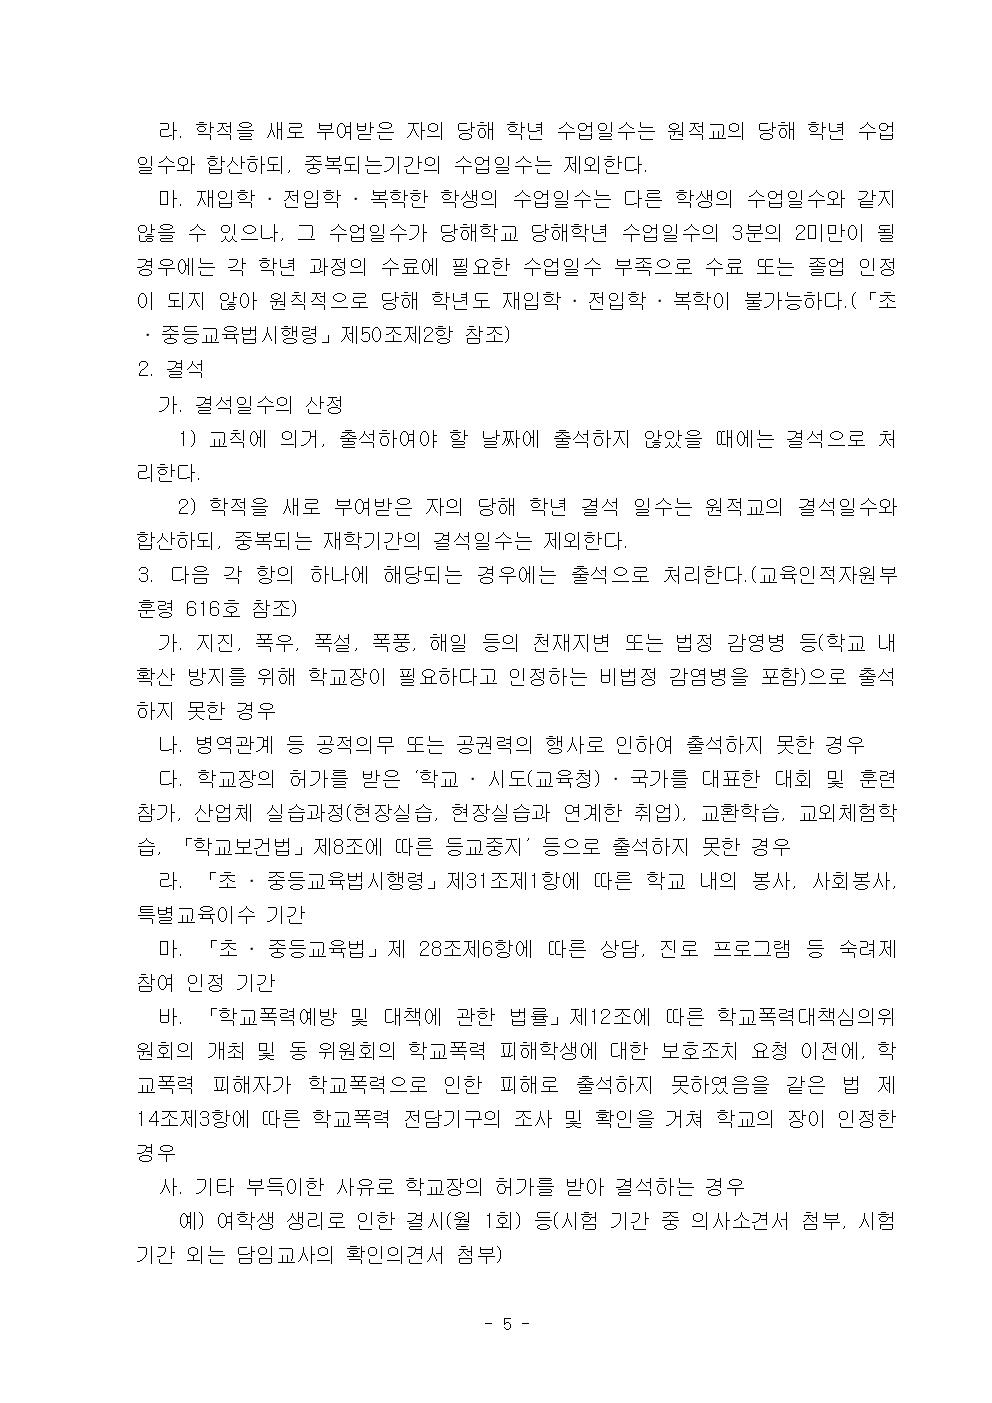 2022학년도 광혜원중학교 학생생활규정006